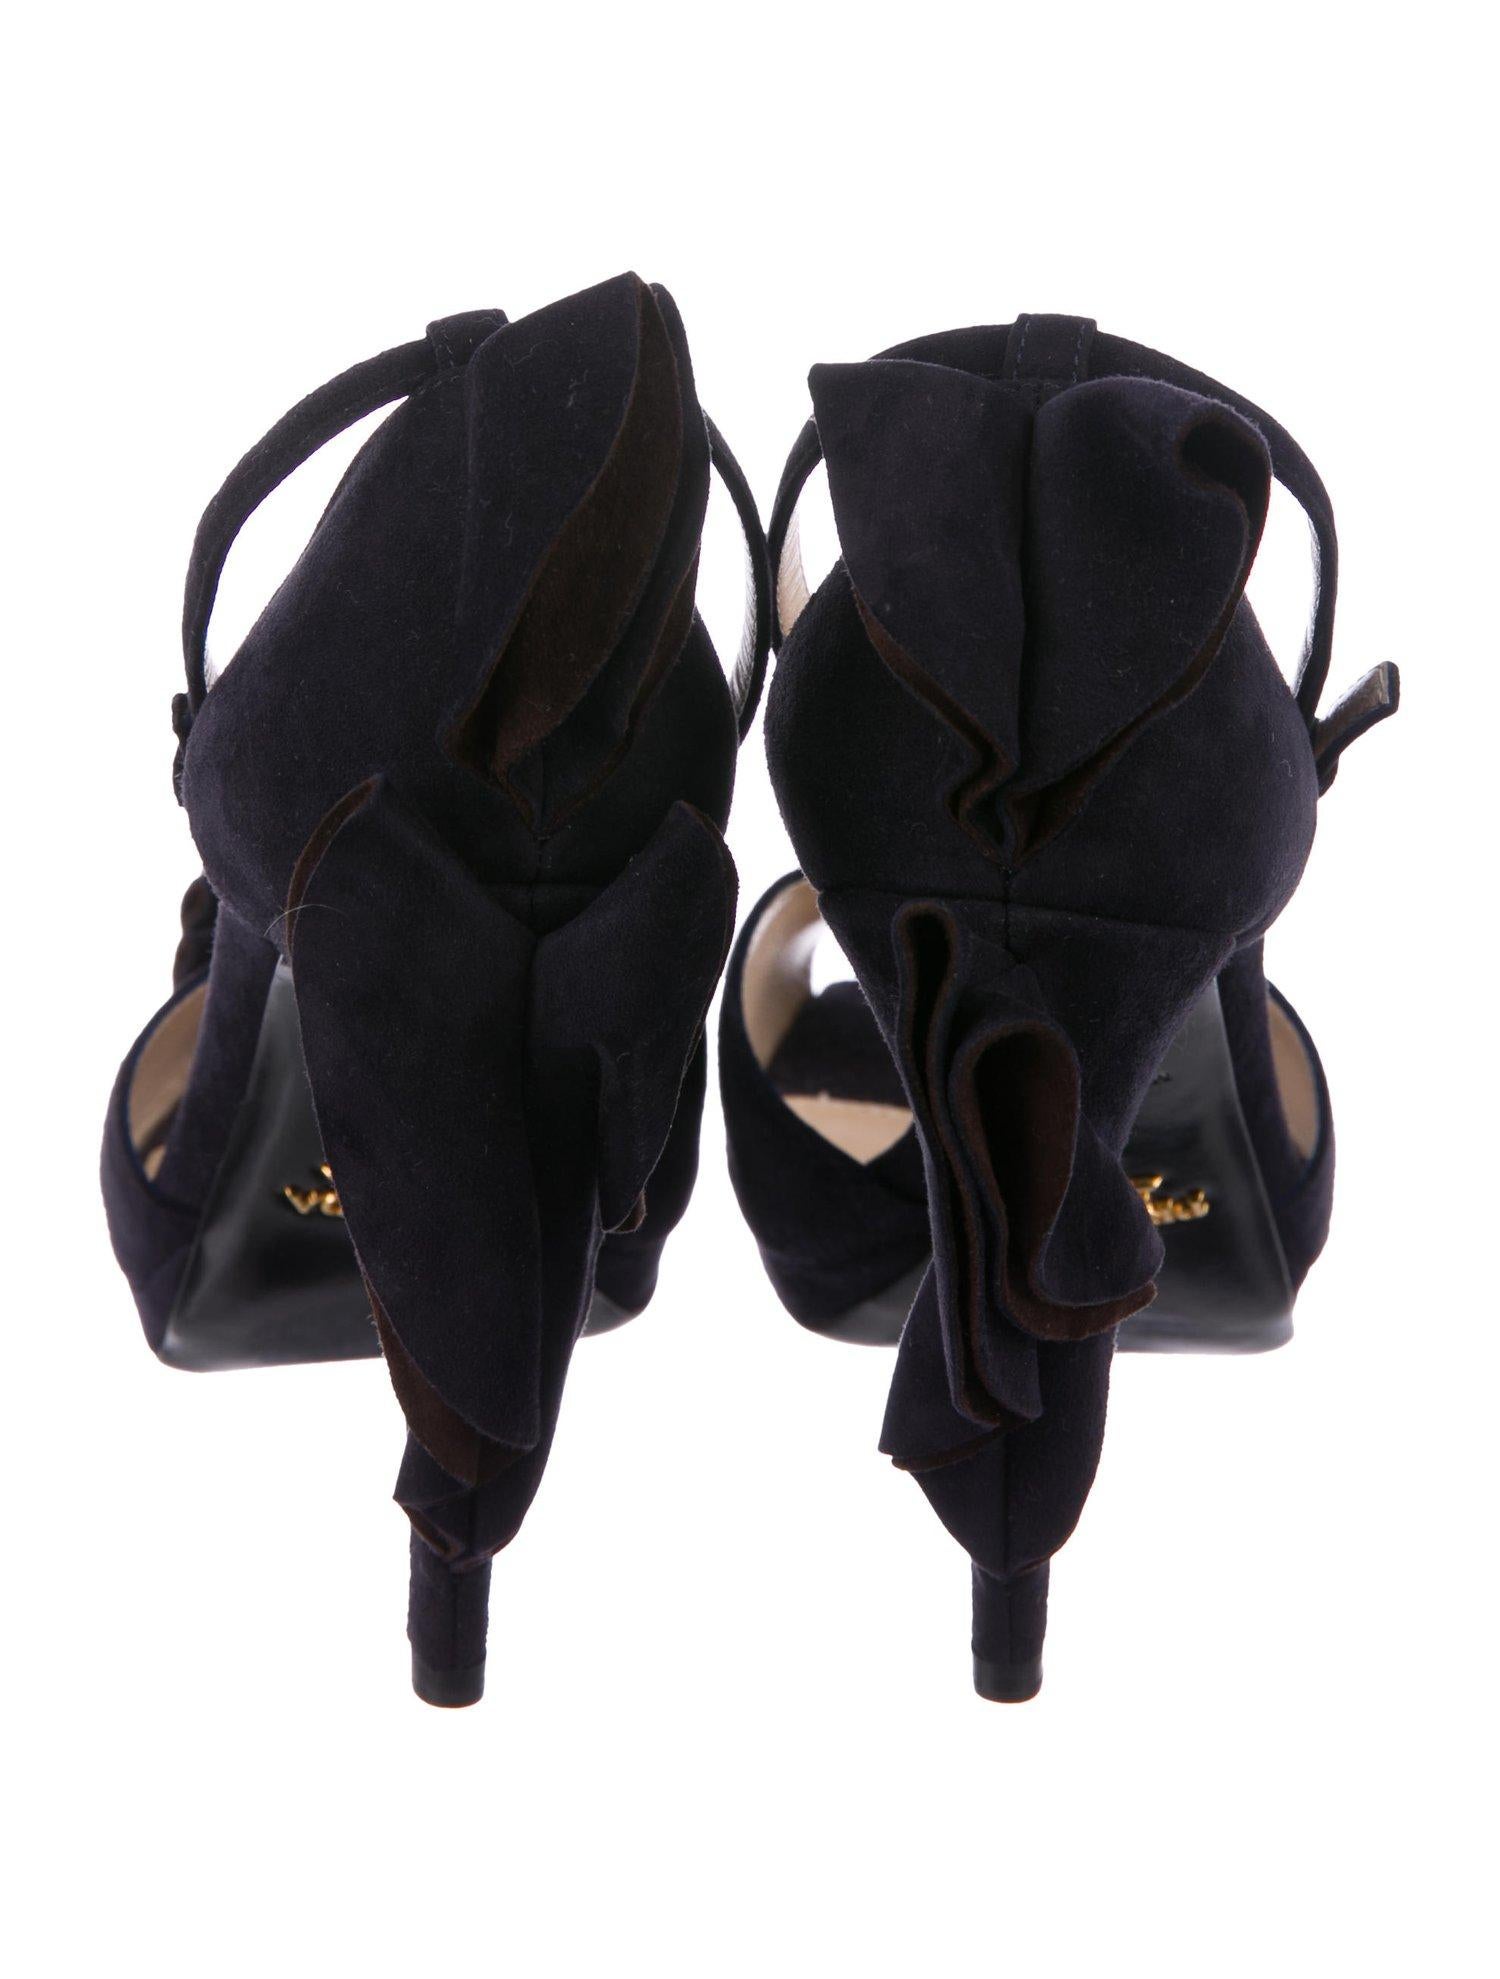 Women's Prada NEW Midnight Blue Suede Ruffle Platform Evening Sandals Heels in Box